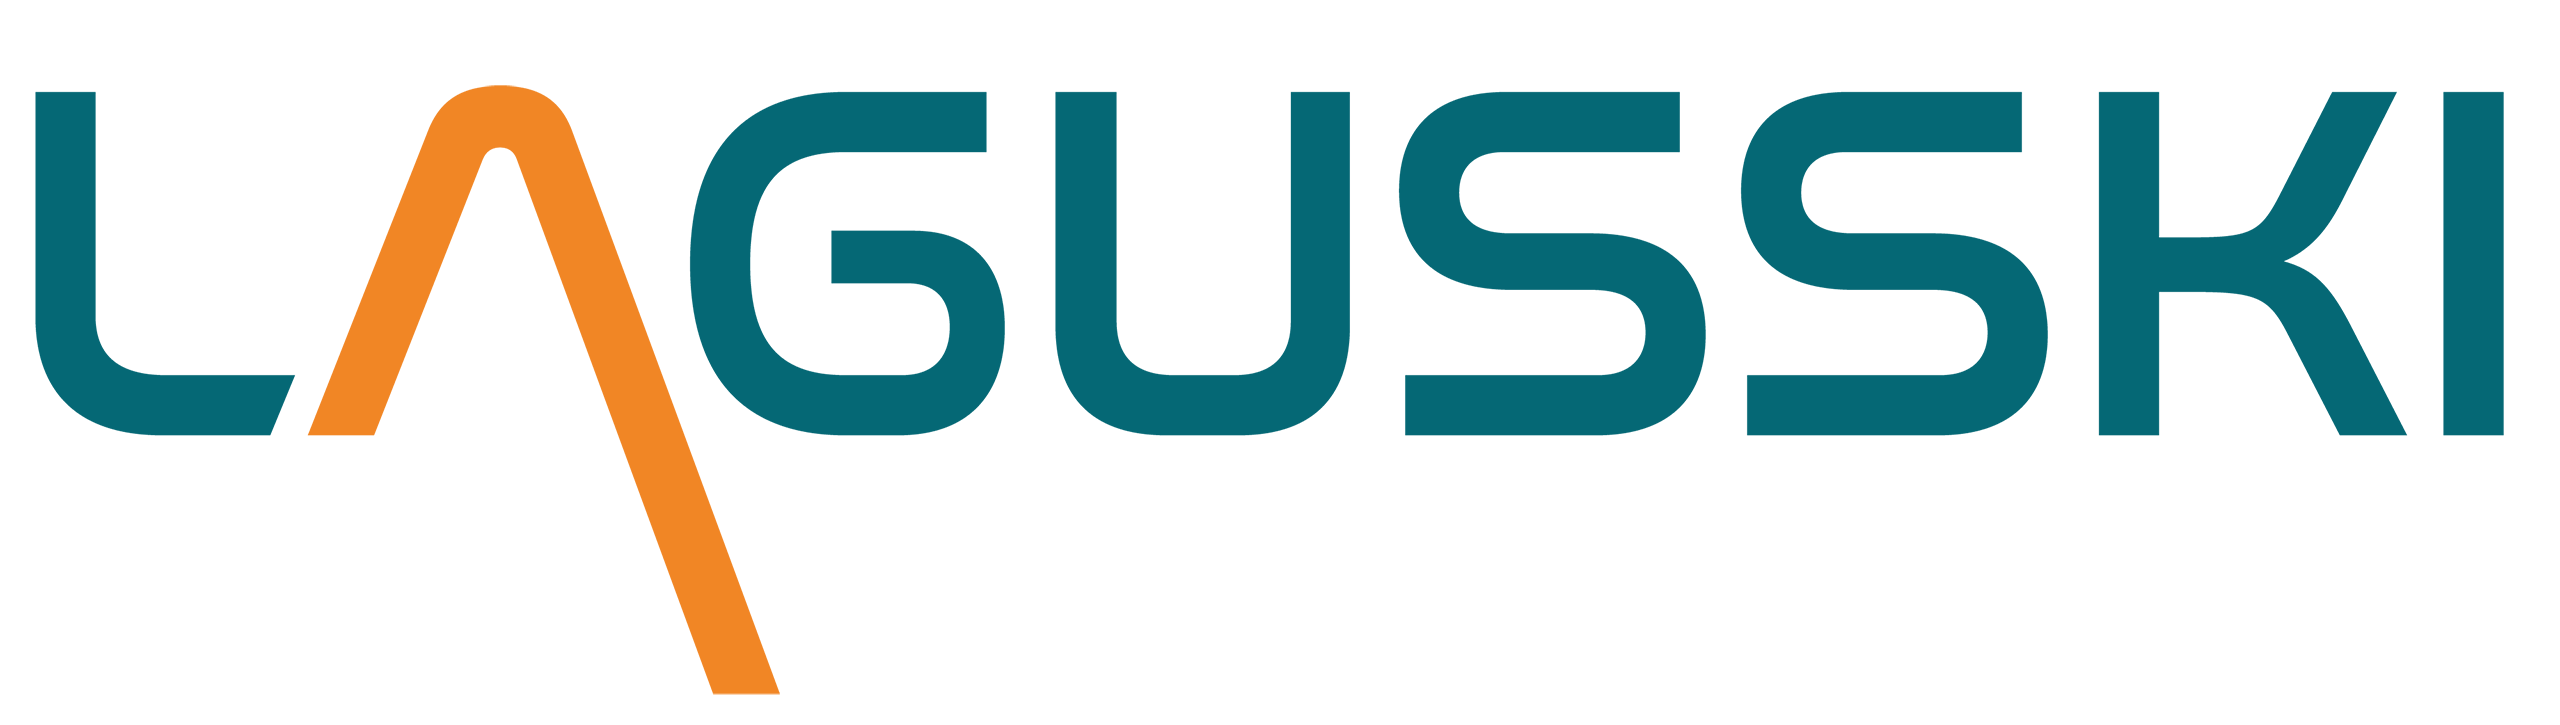 Lagusski logo